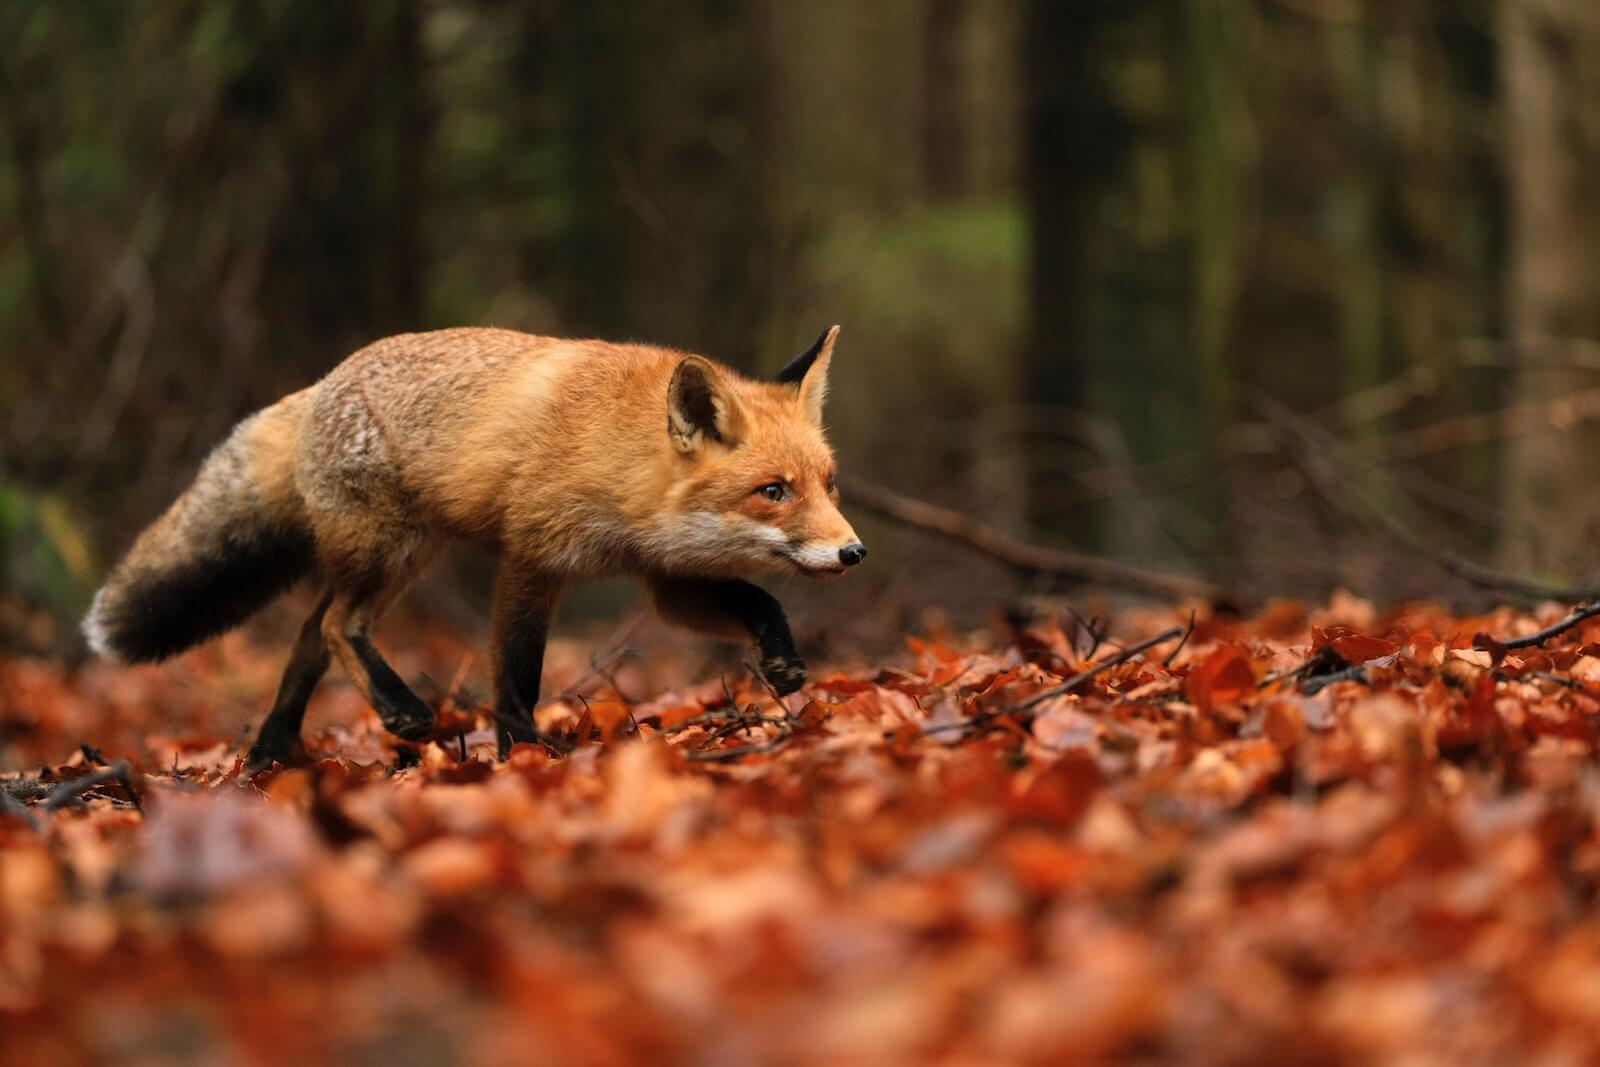 Brown fox walking on dried leaves